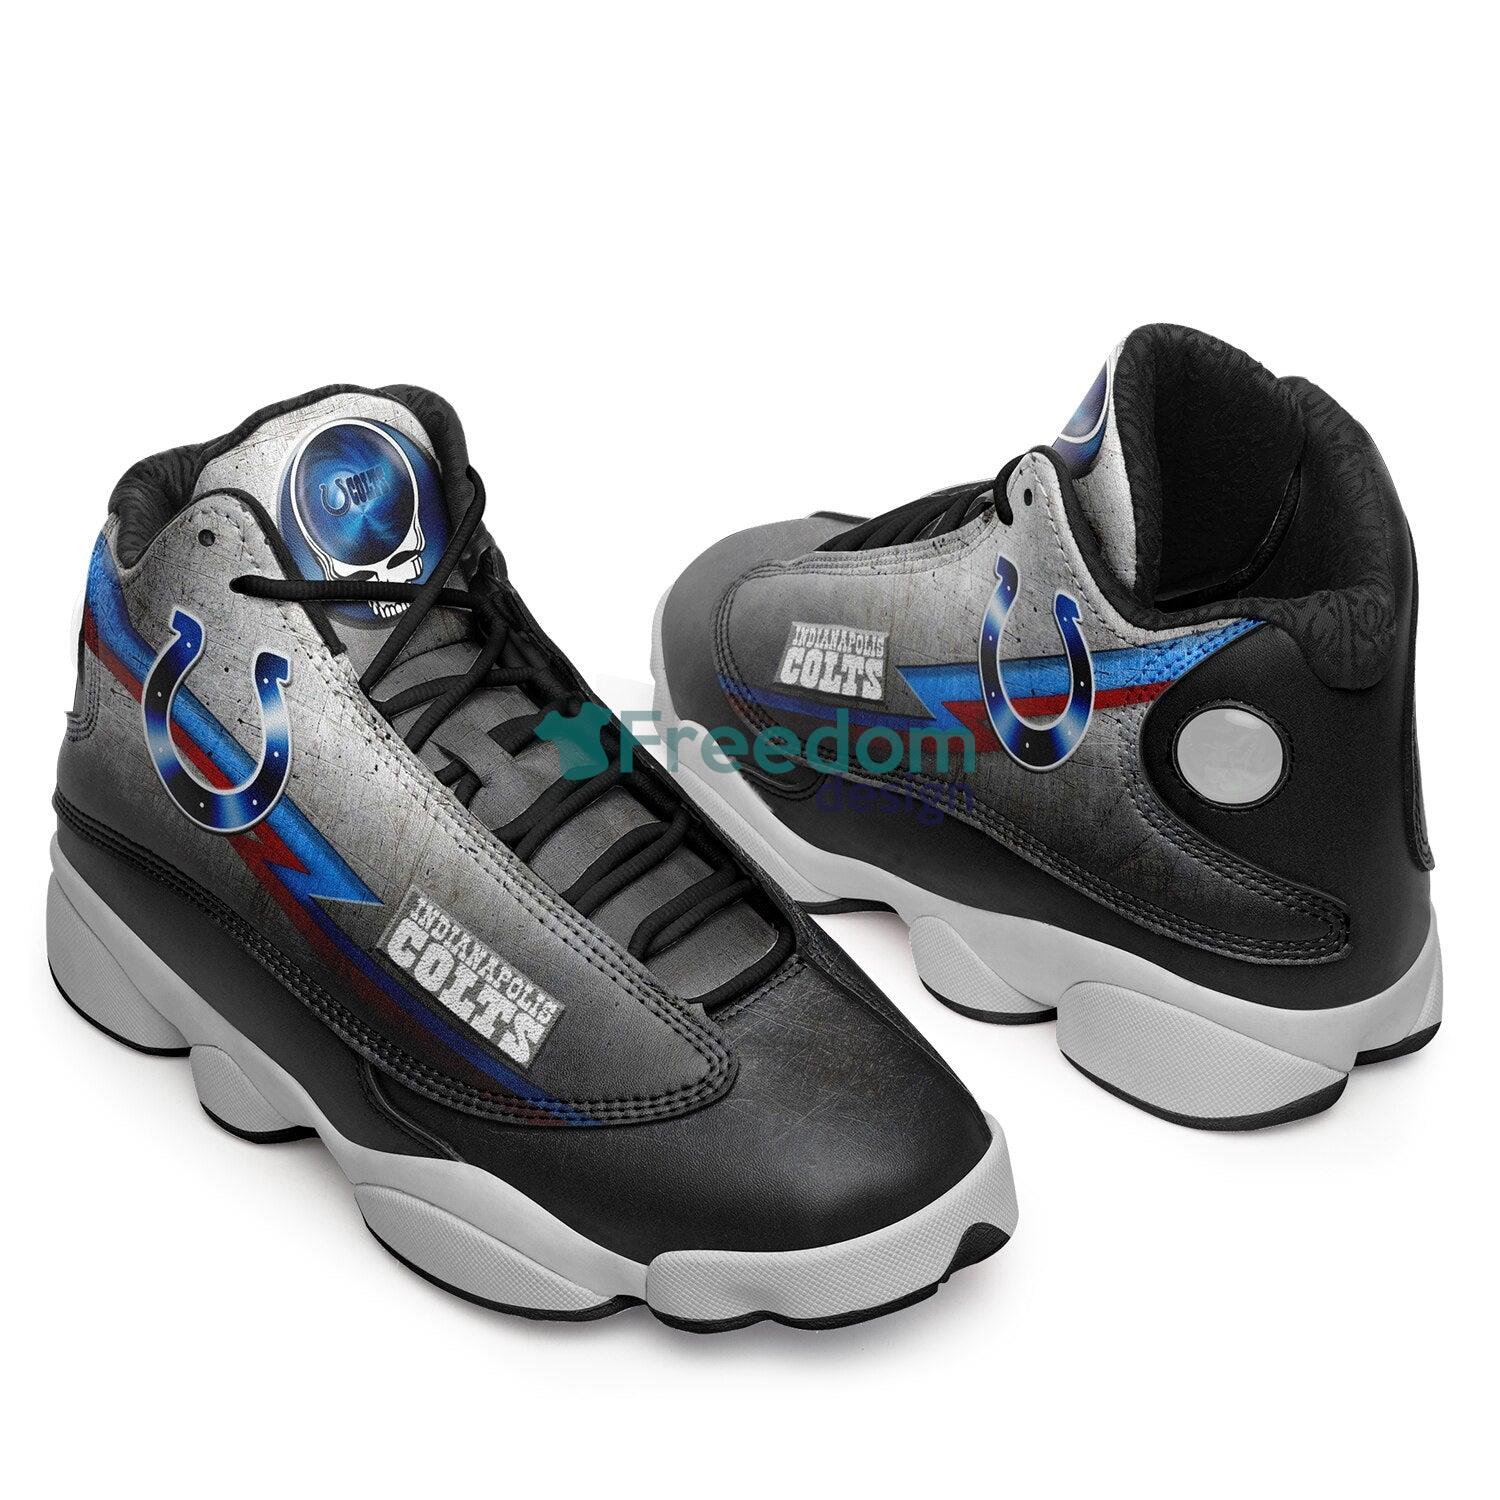 Indianapolis Colts Fans Black Air Jordan 13 Sneaker Shoes For Fans